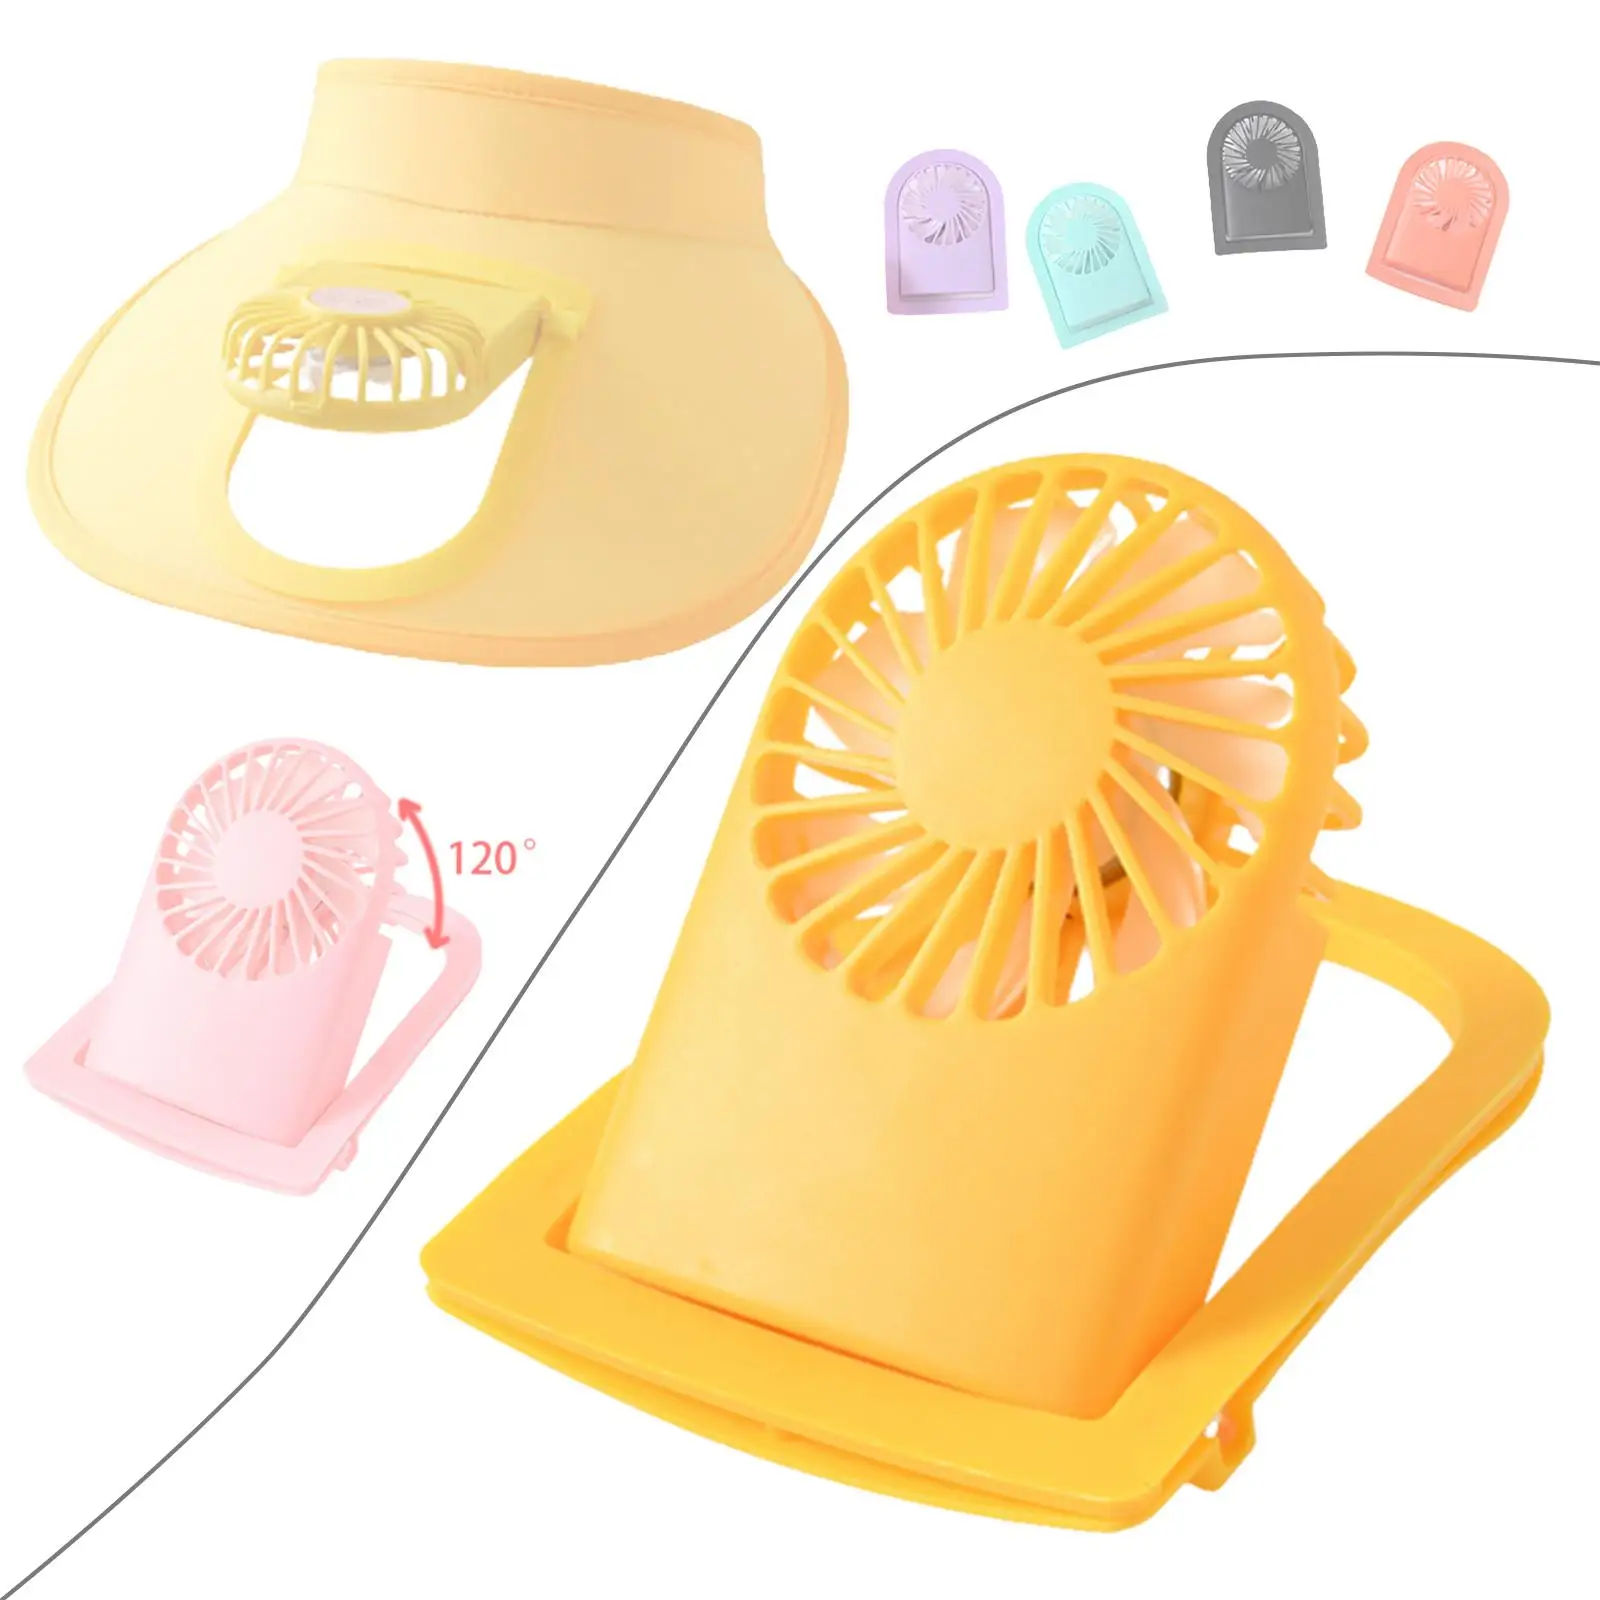 Персональный вентилятор Портативный вентилятор с козырьком Аксессуар для шляпы с регулируемым воздушным охлаждением с питанием от USB, 3 скорости, для походной кухни 2